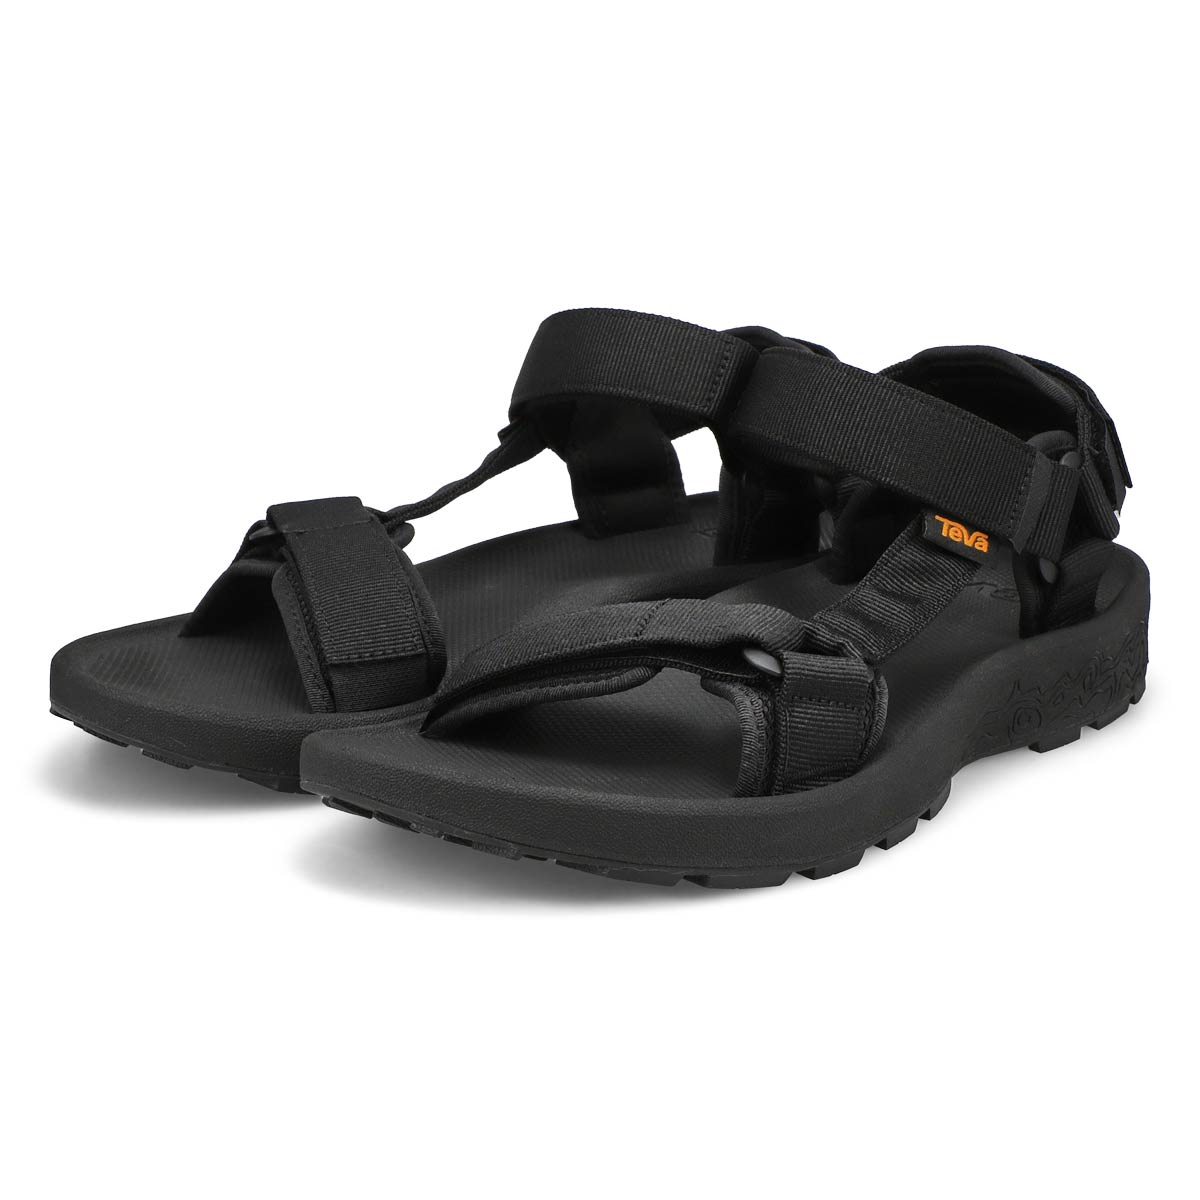 Men's Terragrip Sport Sandal - Black